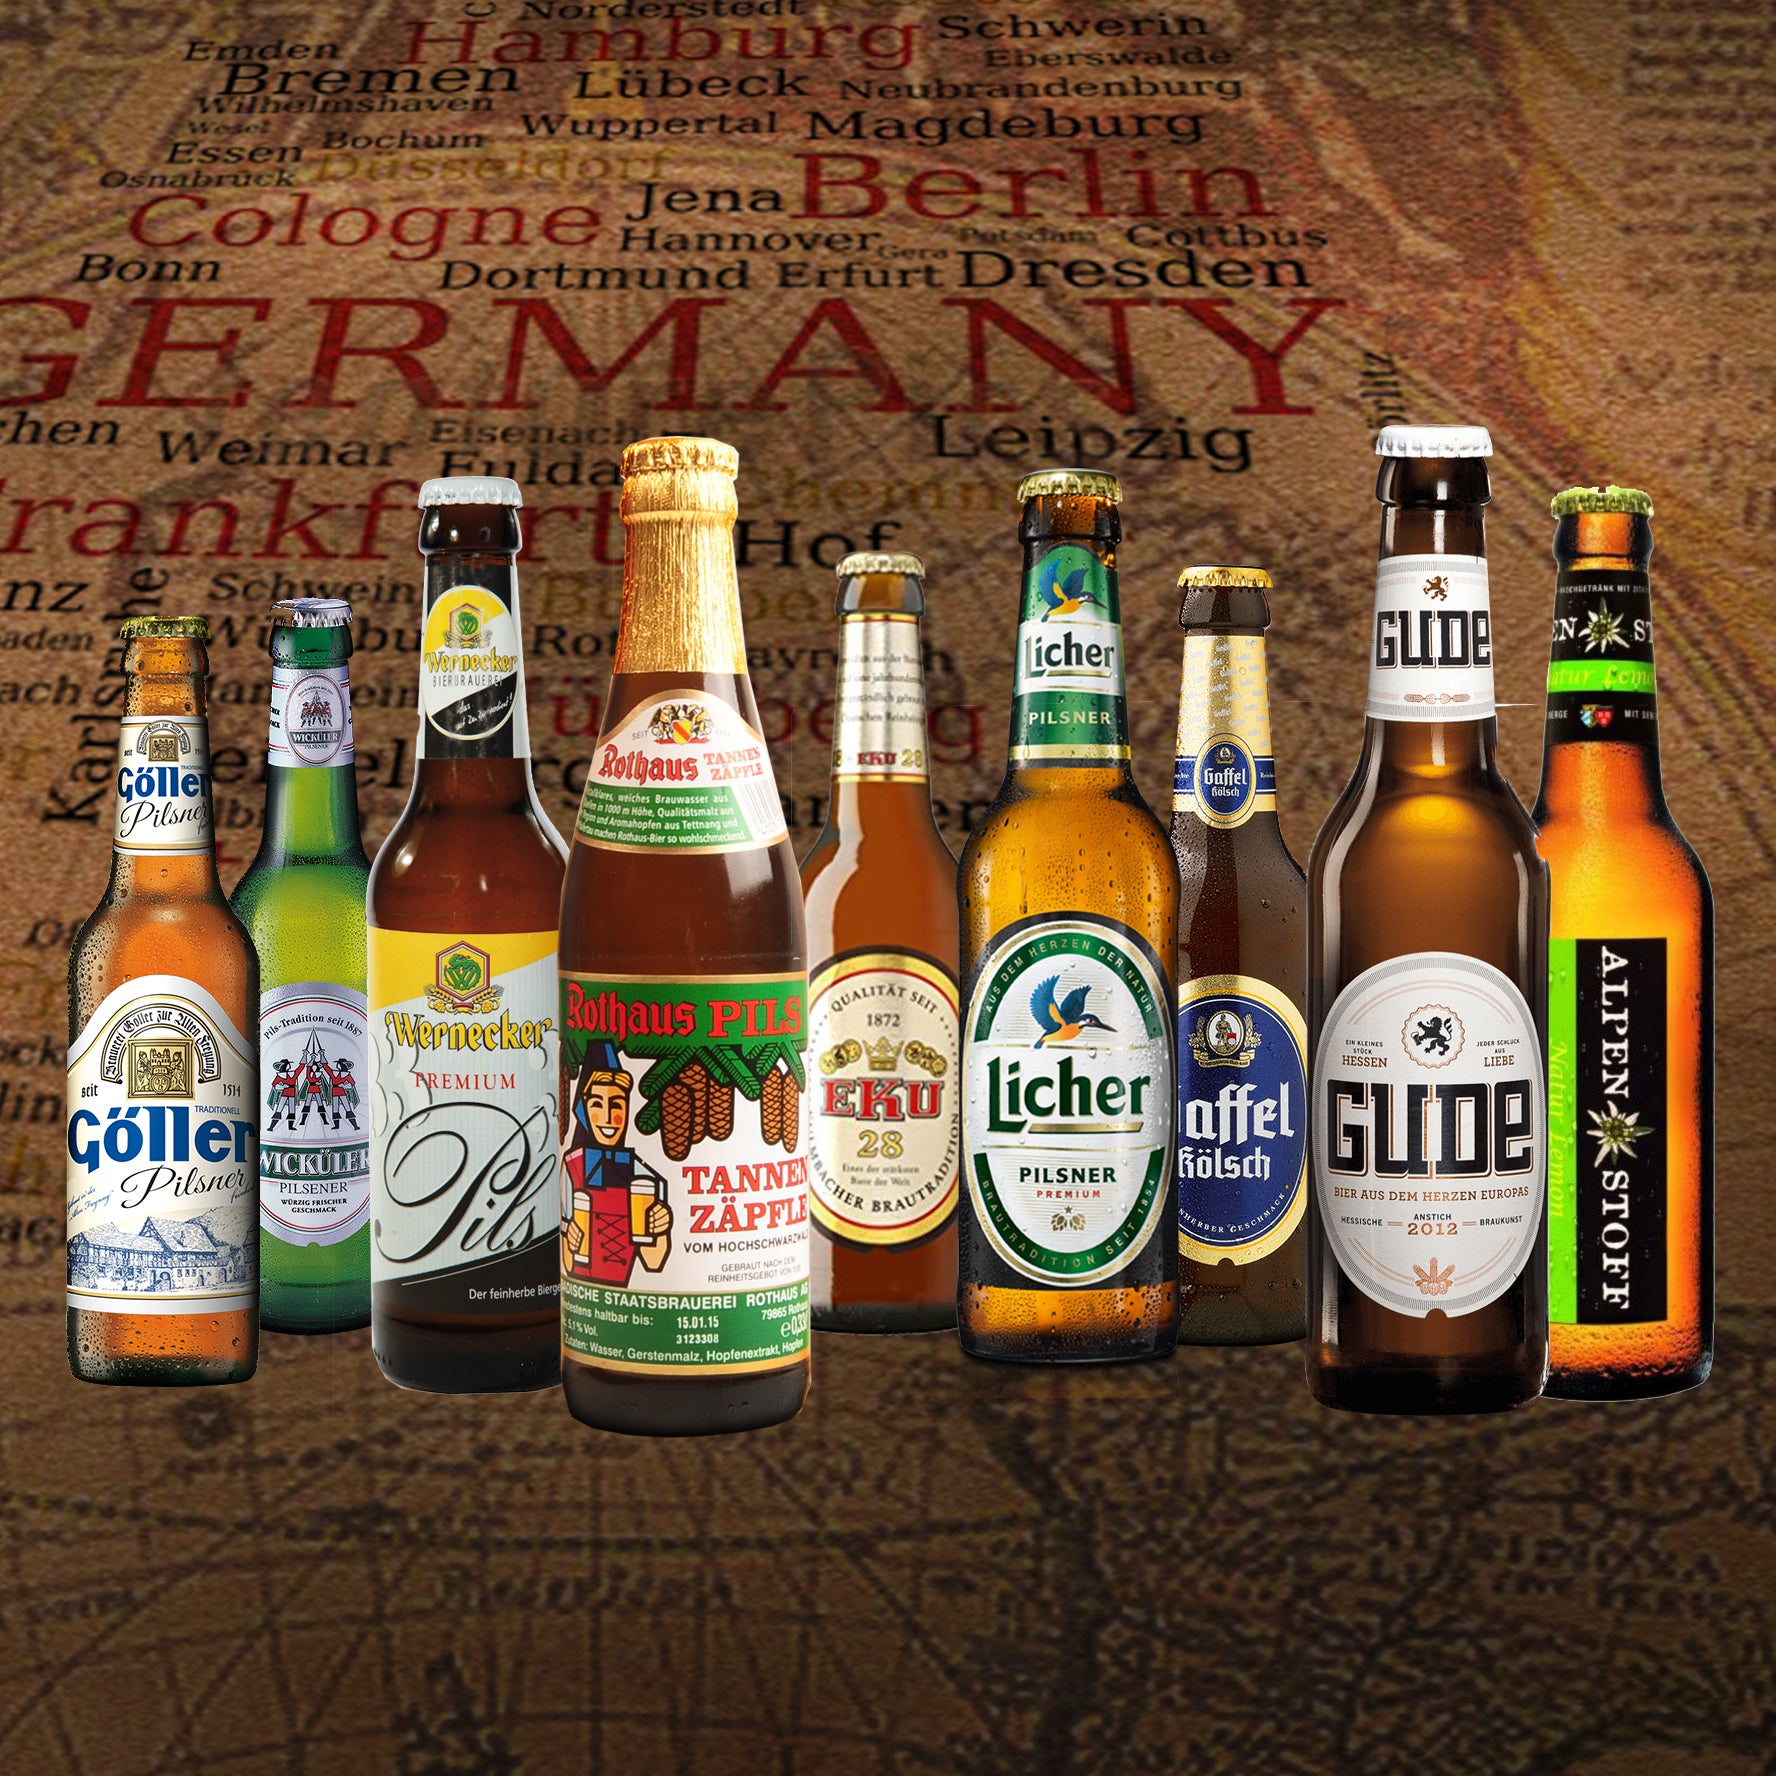 Bier Spezialitäten aus Deutschland (Die besten deutschen Biere) als Probierpaket zum Verschenken in Geschenkverpackung (Bier + Tasting-Anleitung + Bierbroschüre + Brauereigeschenke) 9 x 0,33l